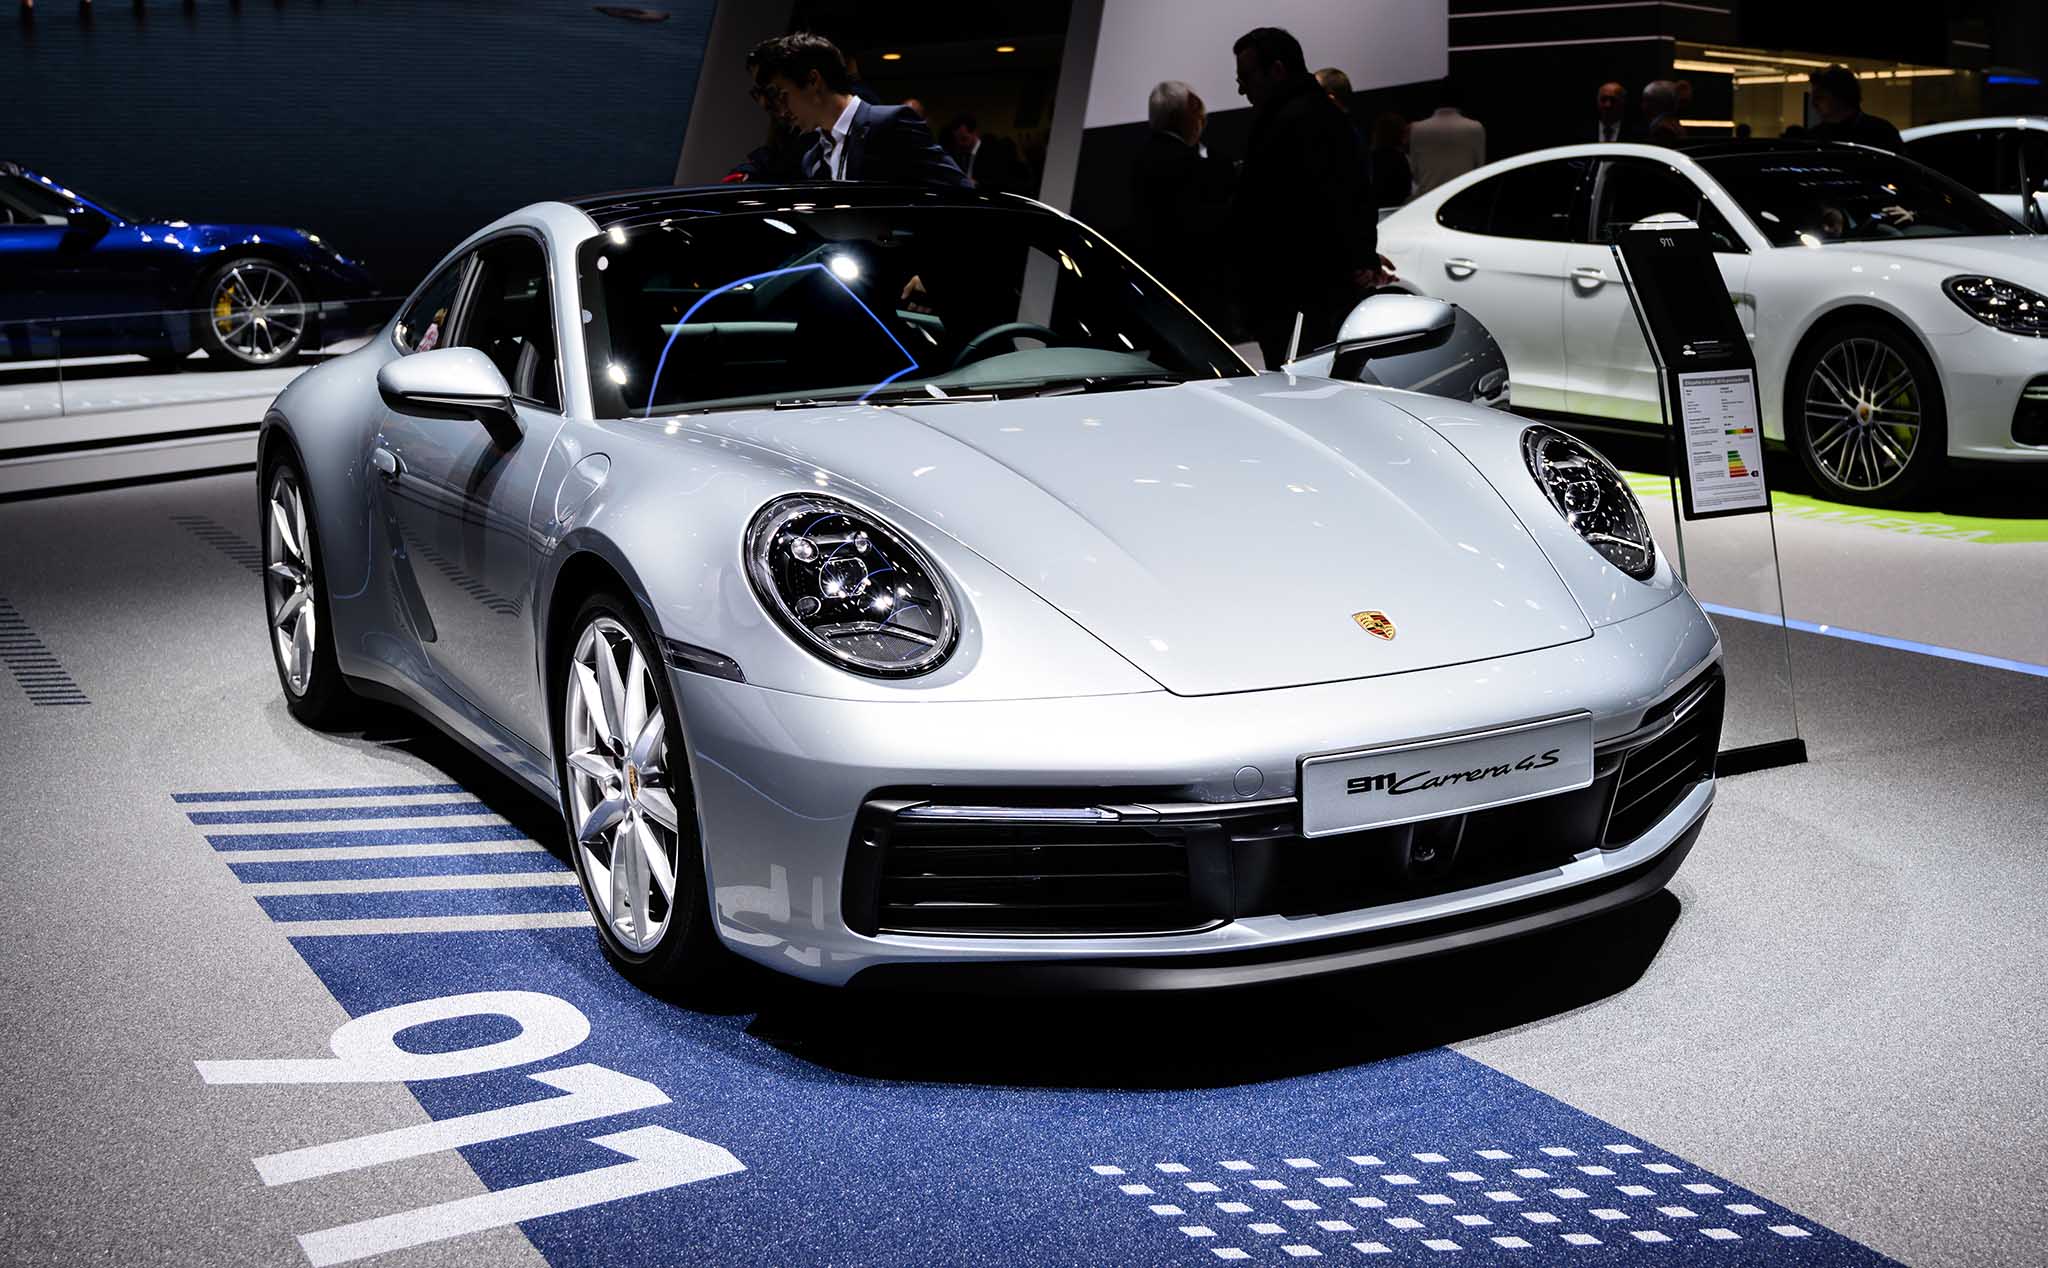 Nghiên cứu: Porsche 911 là chiếc xe có ngoại hình bắt mắt nhất